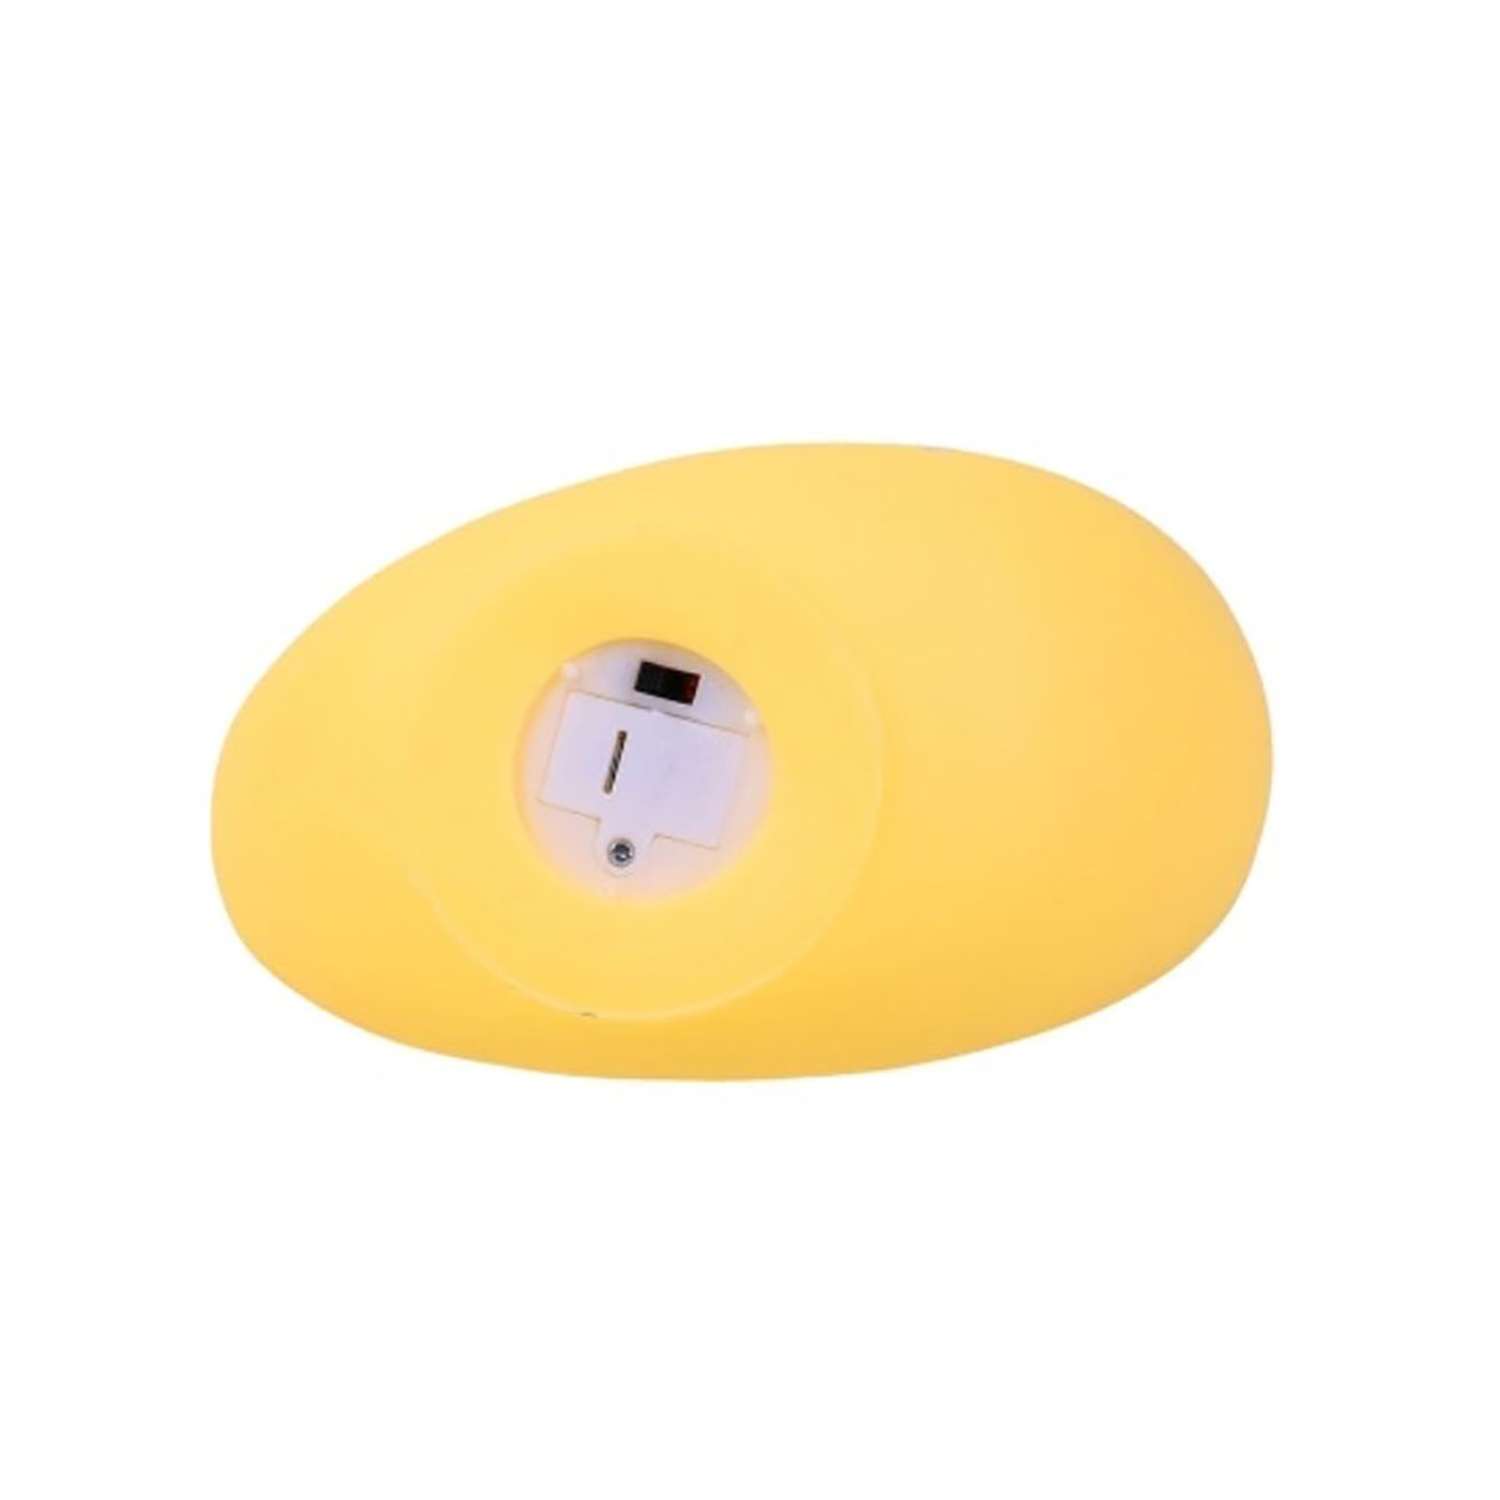 Лампа настольная светодиодная LATS ночник детский месяц желтый - фото 11